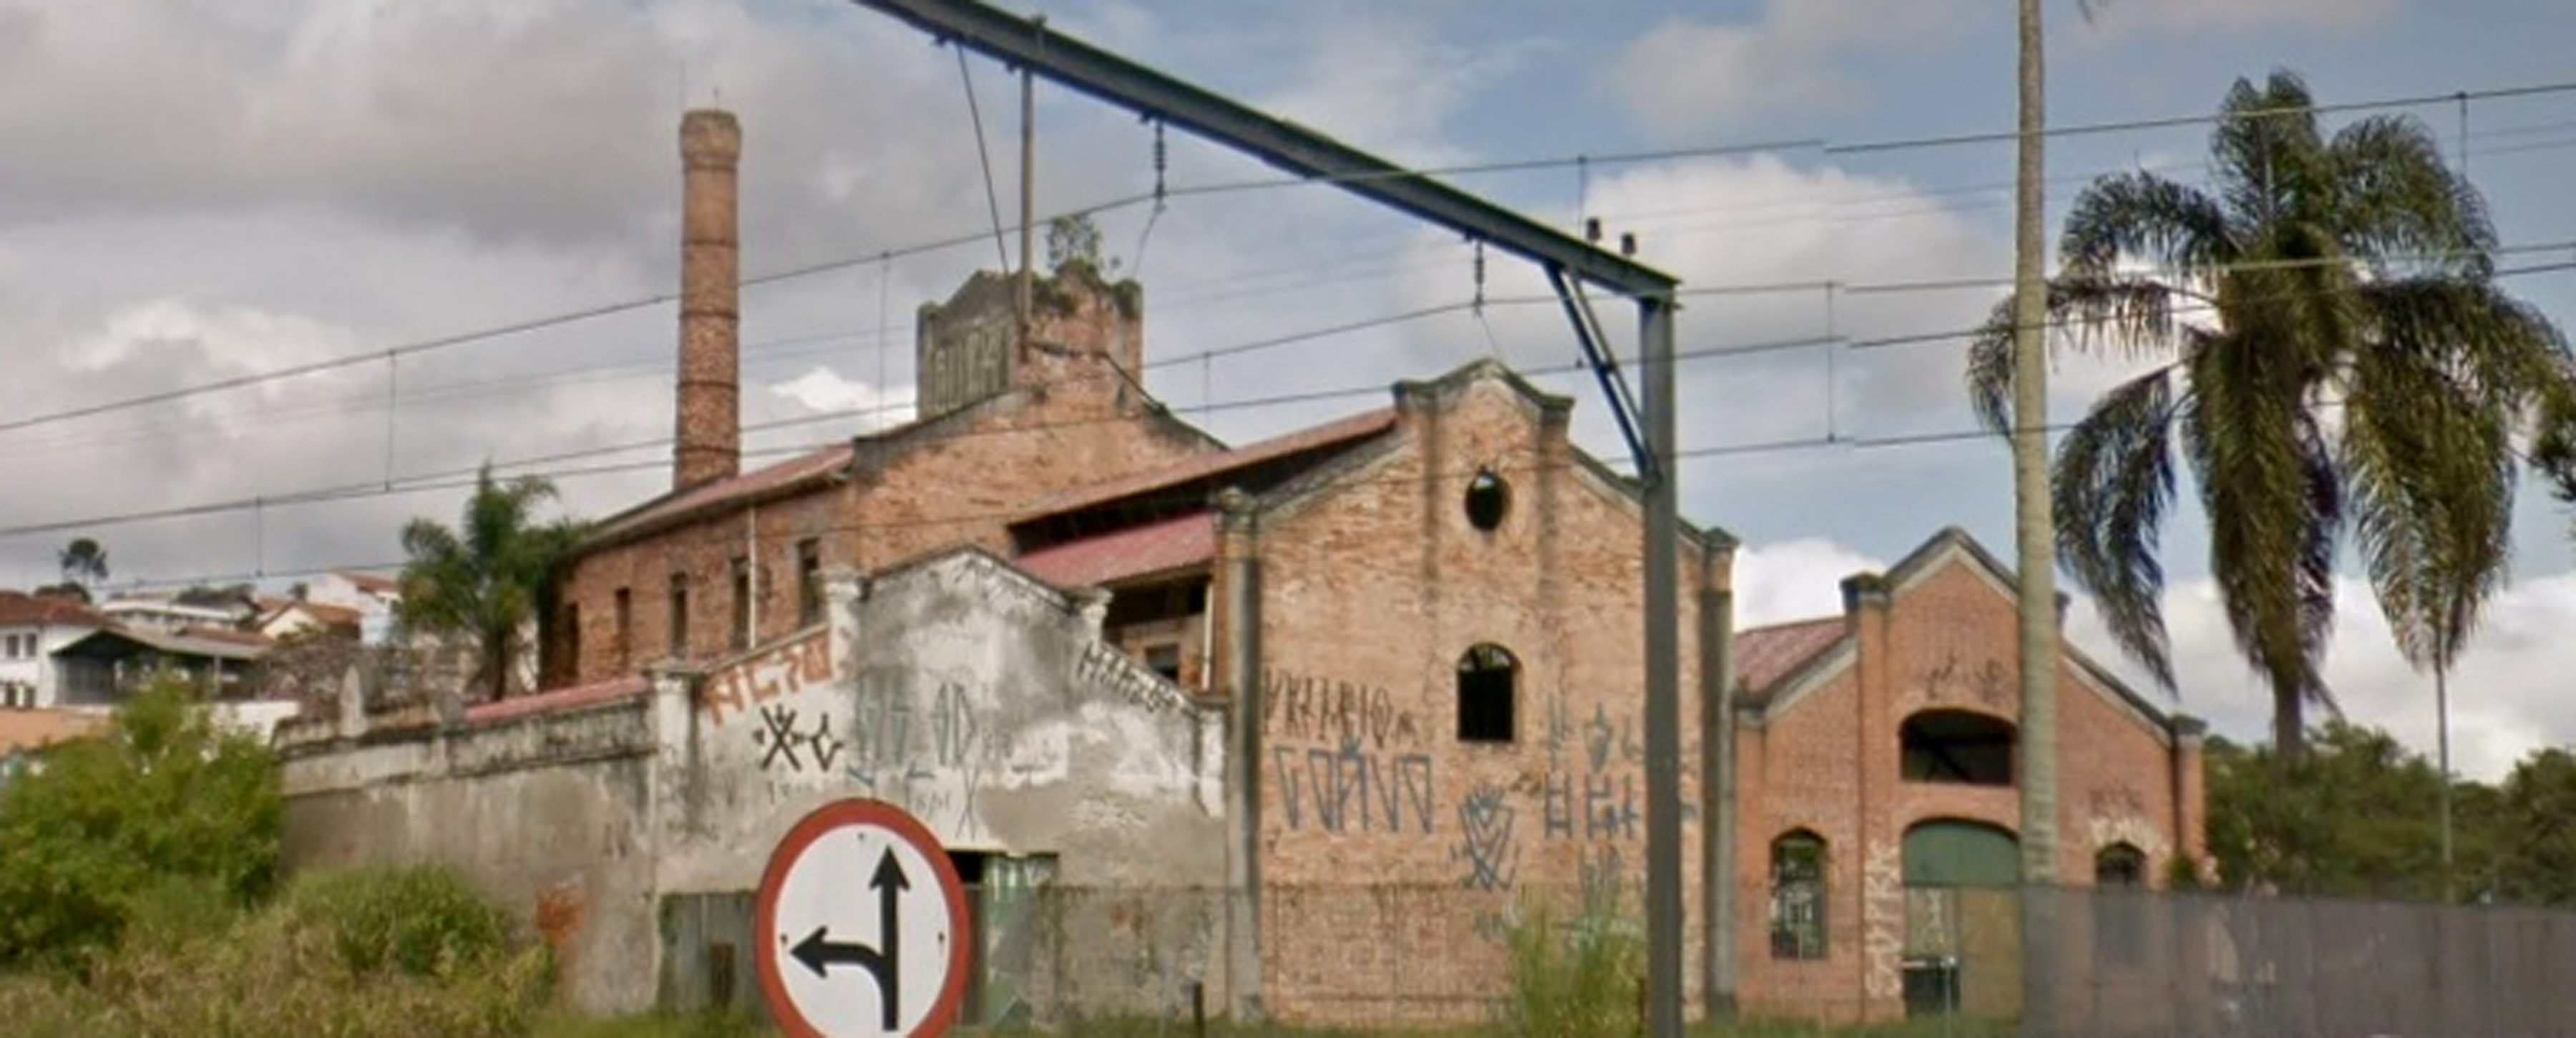 Il mulino dei fratelli Maciotta a Ribeirão Pires come appare oggi.